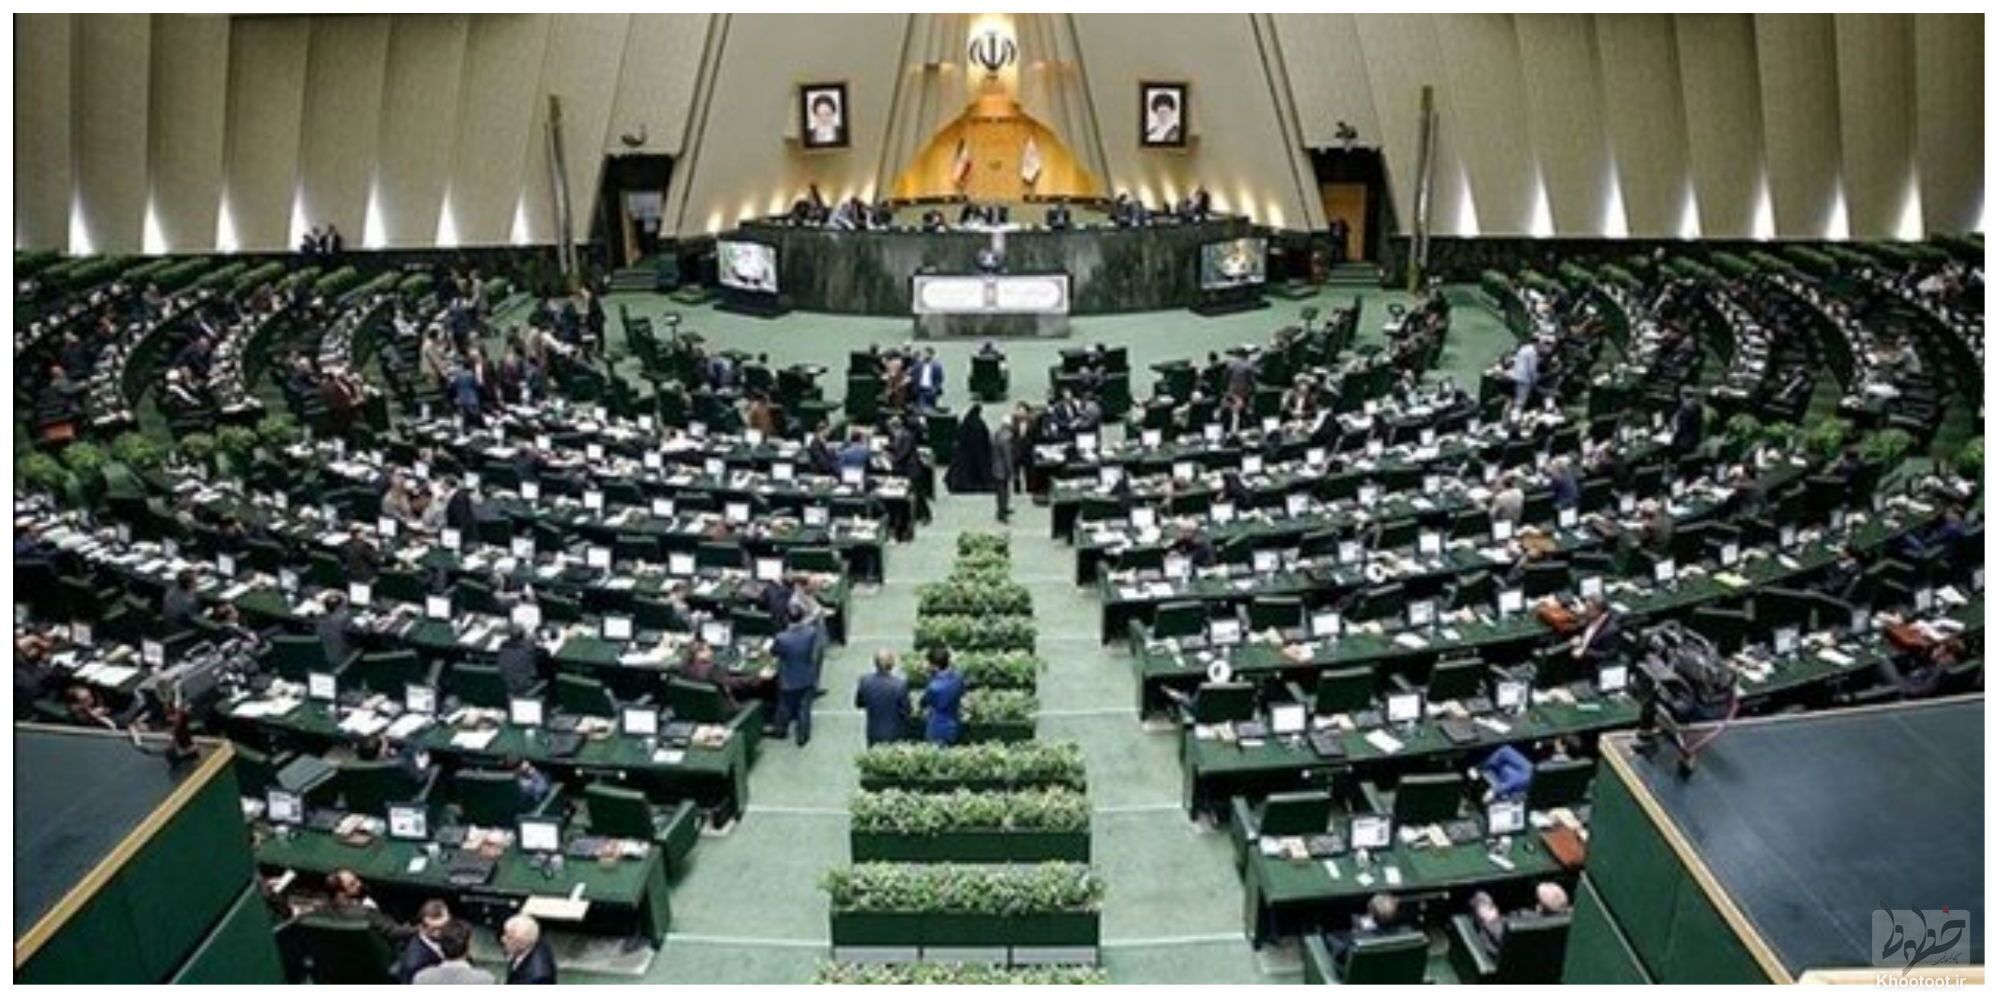 طرح ممنوعیت خروج مسئولین و مدیران نظام جمهوری اسلامی پس از اتمام مسئولیت در دستور کار قرار گرفت